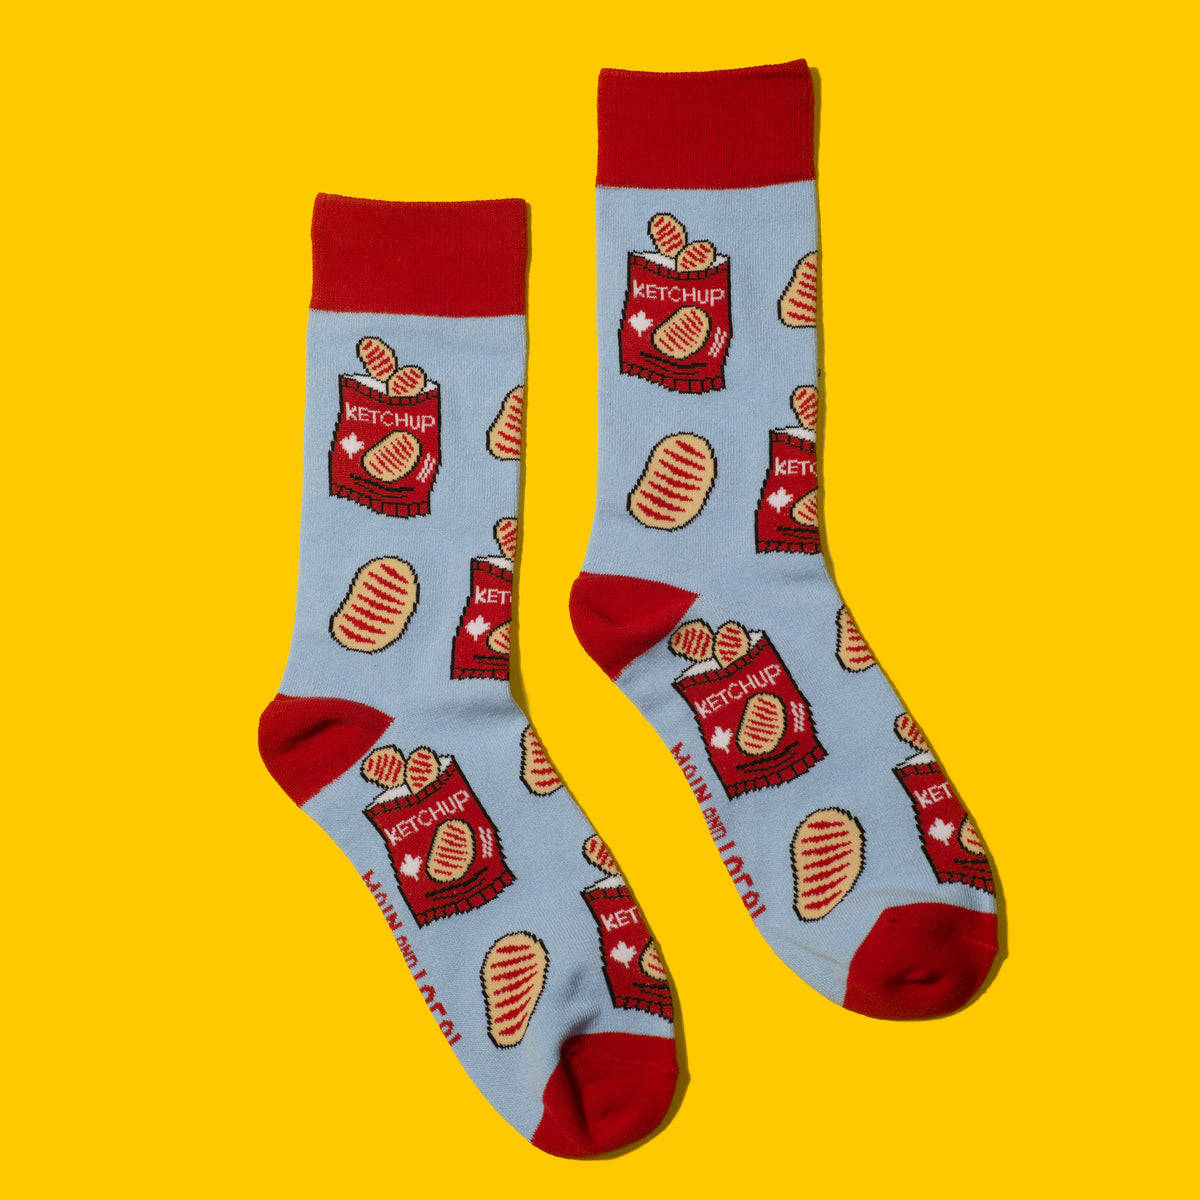 Canadian Ketchup Chips Socks